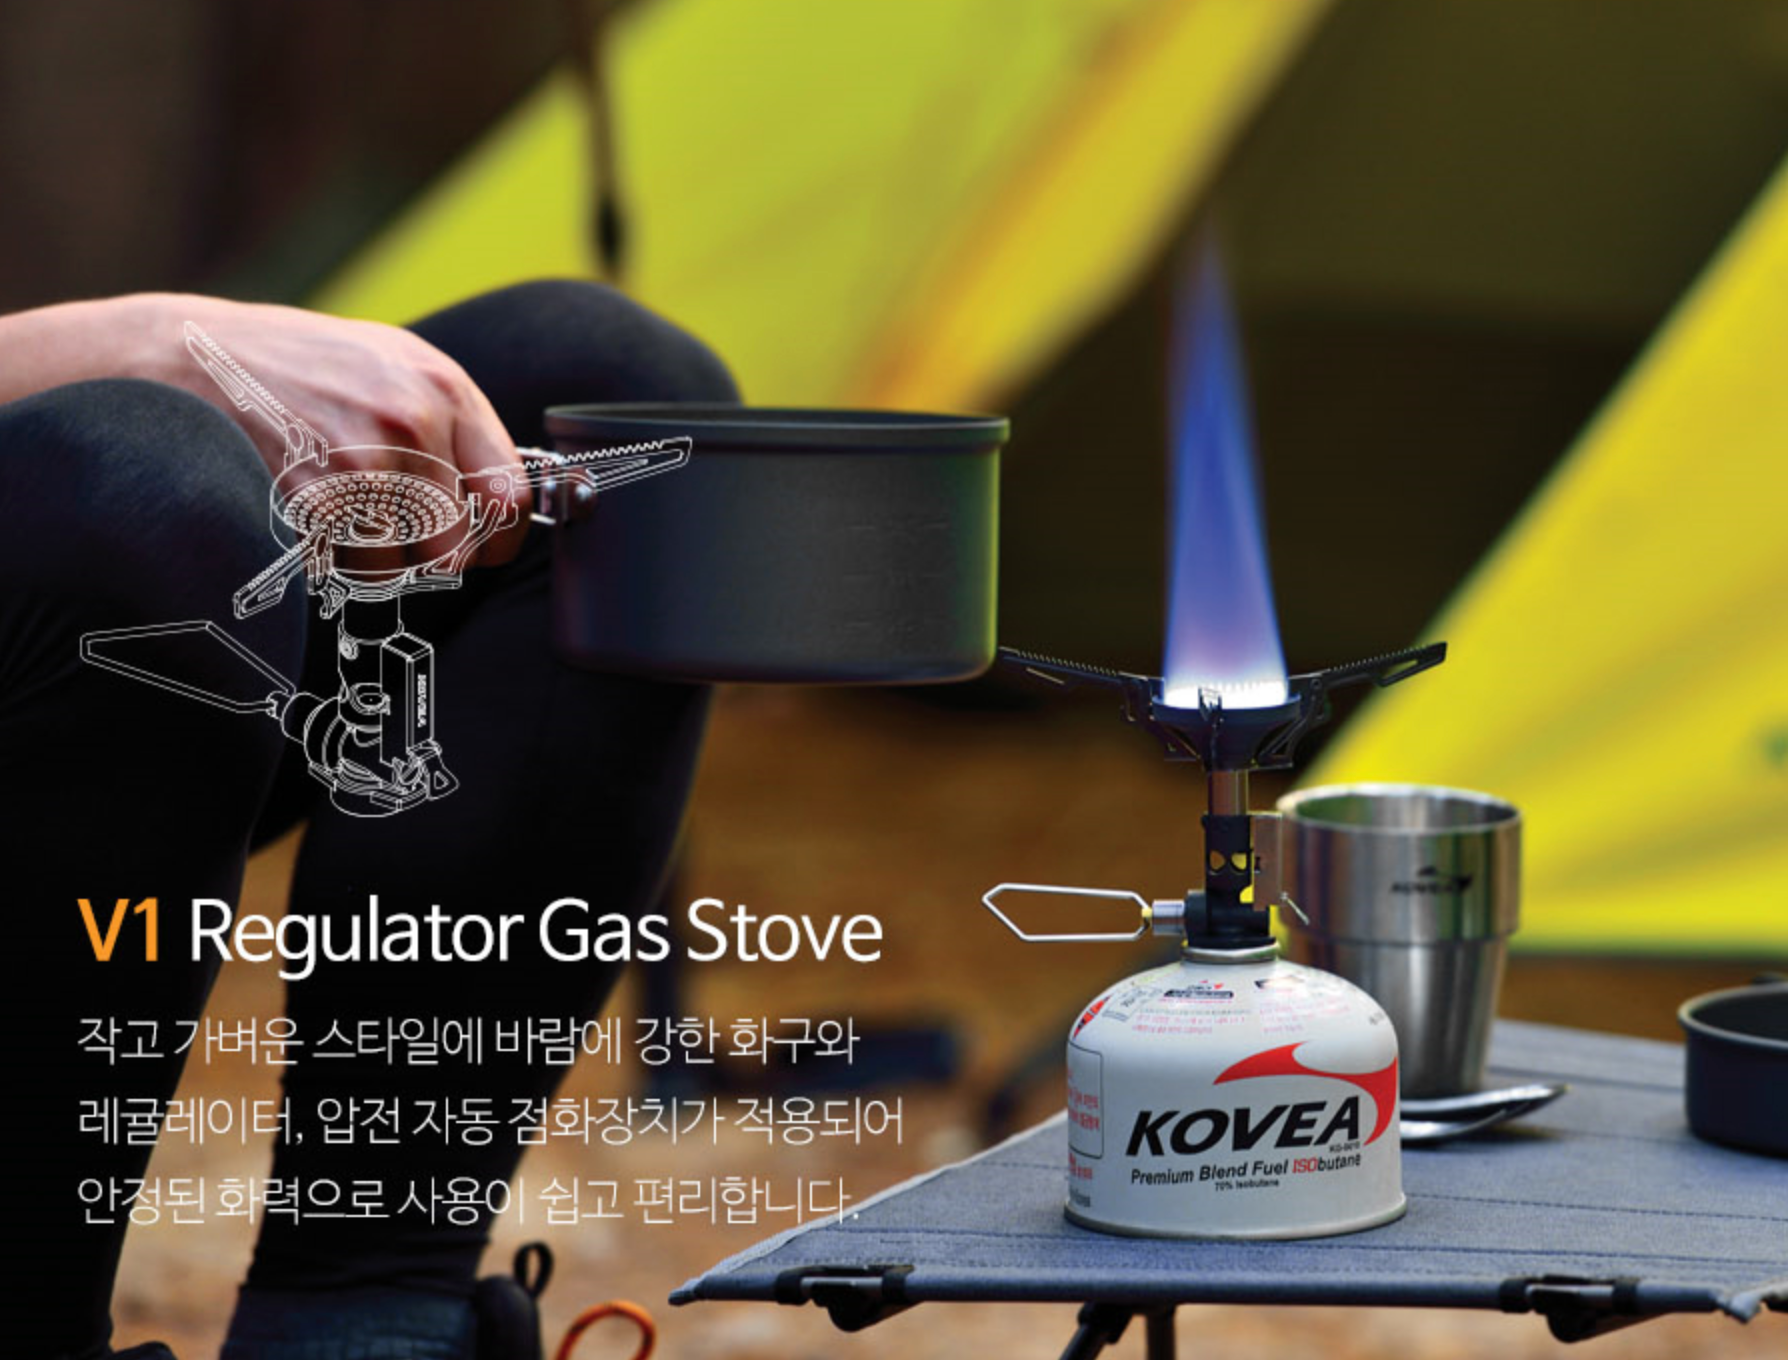 KOVEA V1 Regulator Gas Stove 防風穩壓登山爐